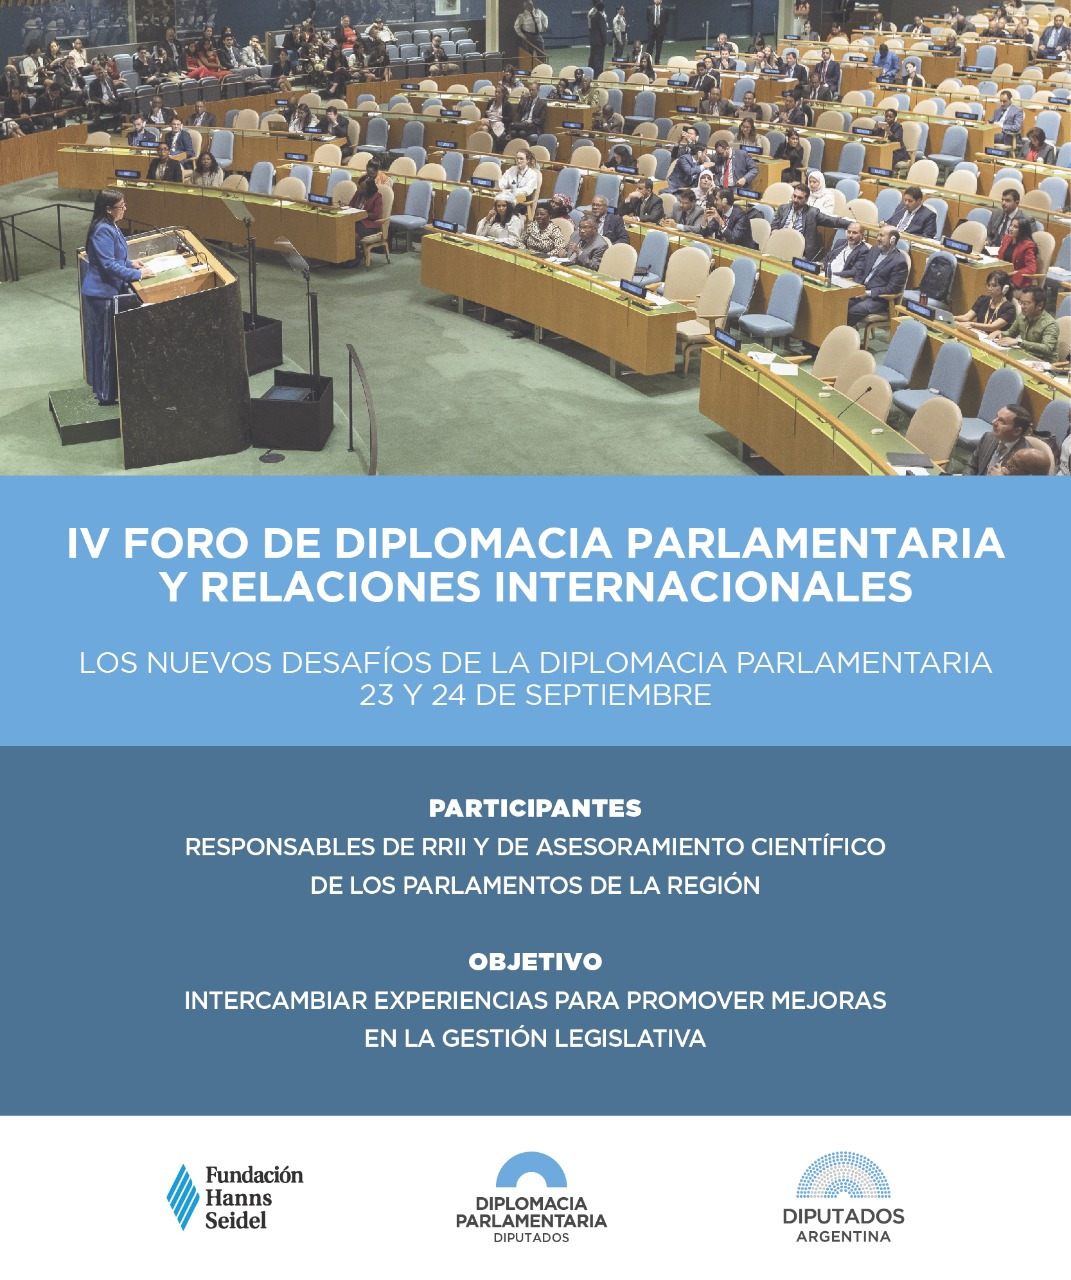 Diputados organizó el IV Foro de Diplomacia Parlamentaria y Relaciones Internacionales